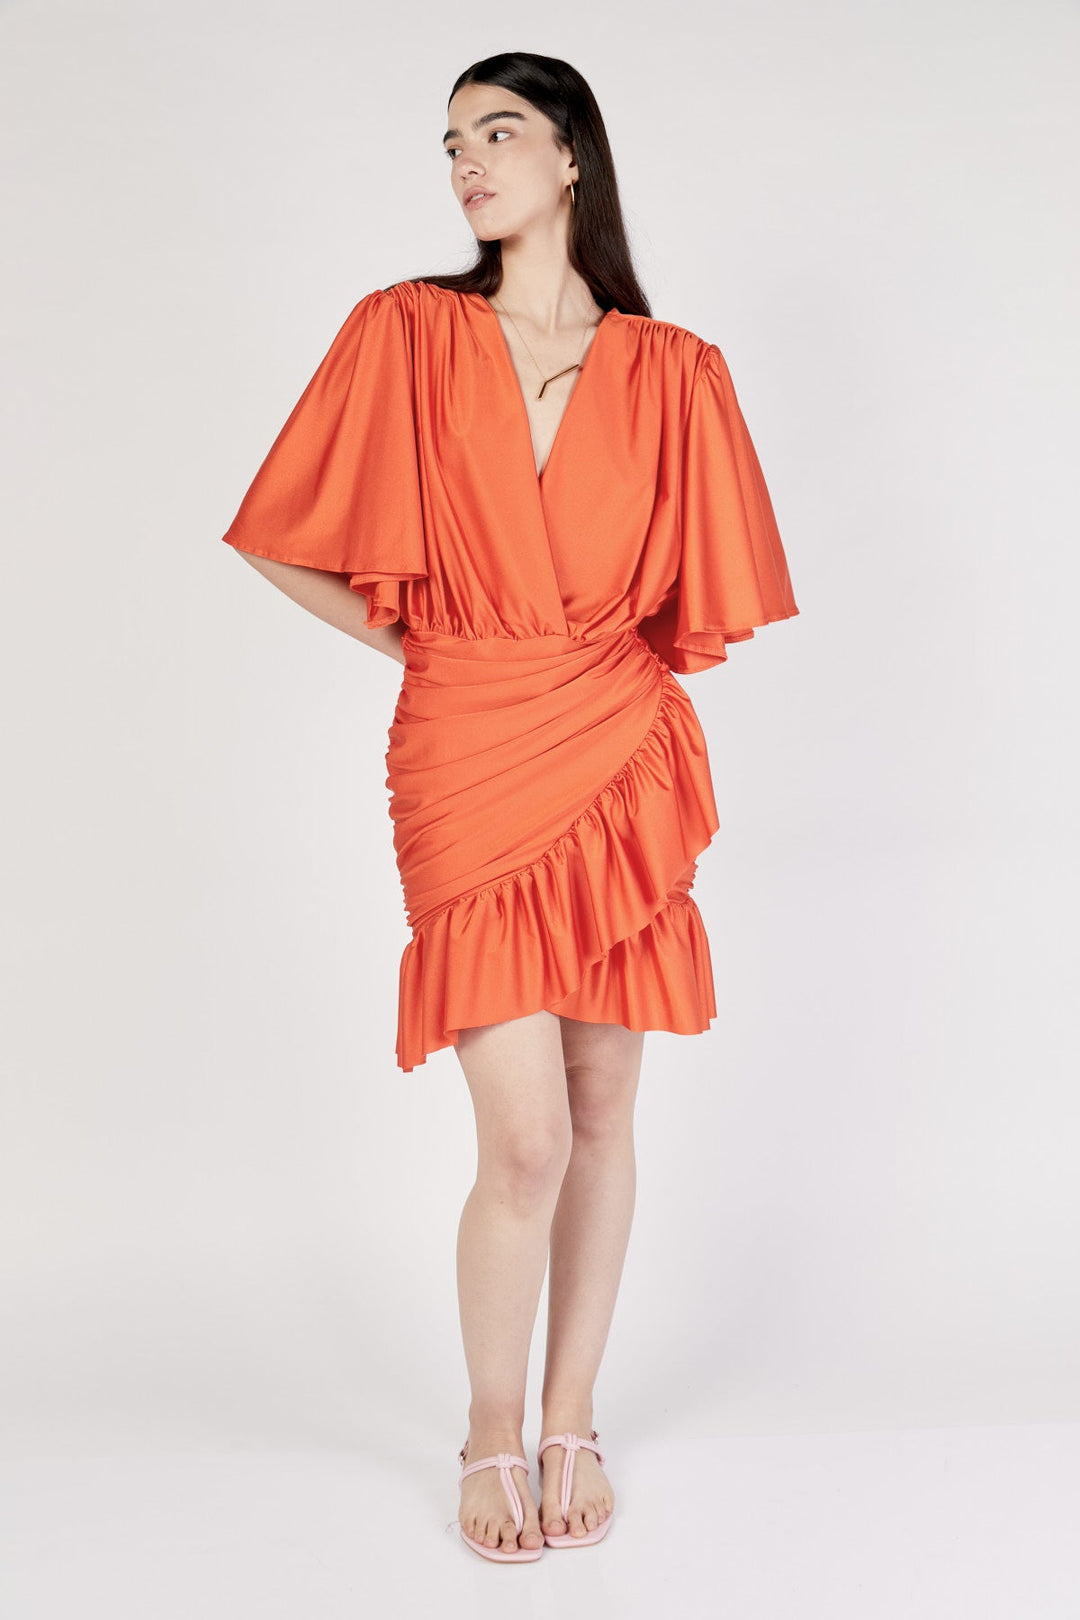 שמלת מיני ניקה בצבע כתום - Dana Sidi